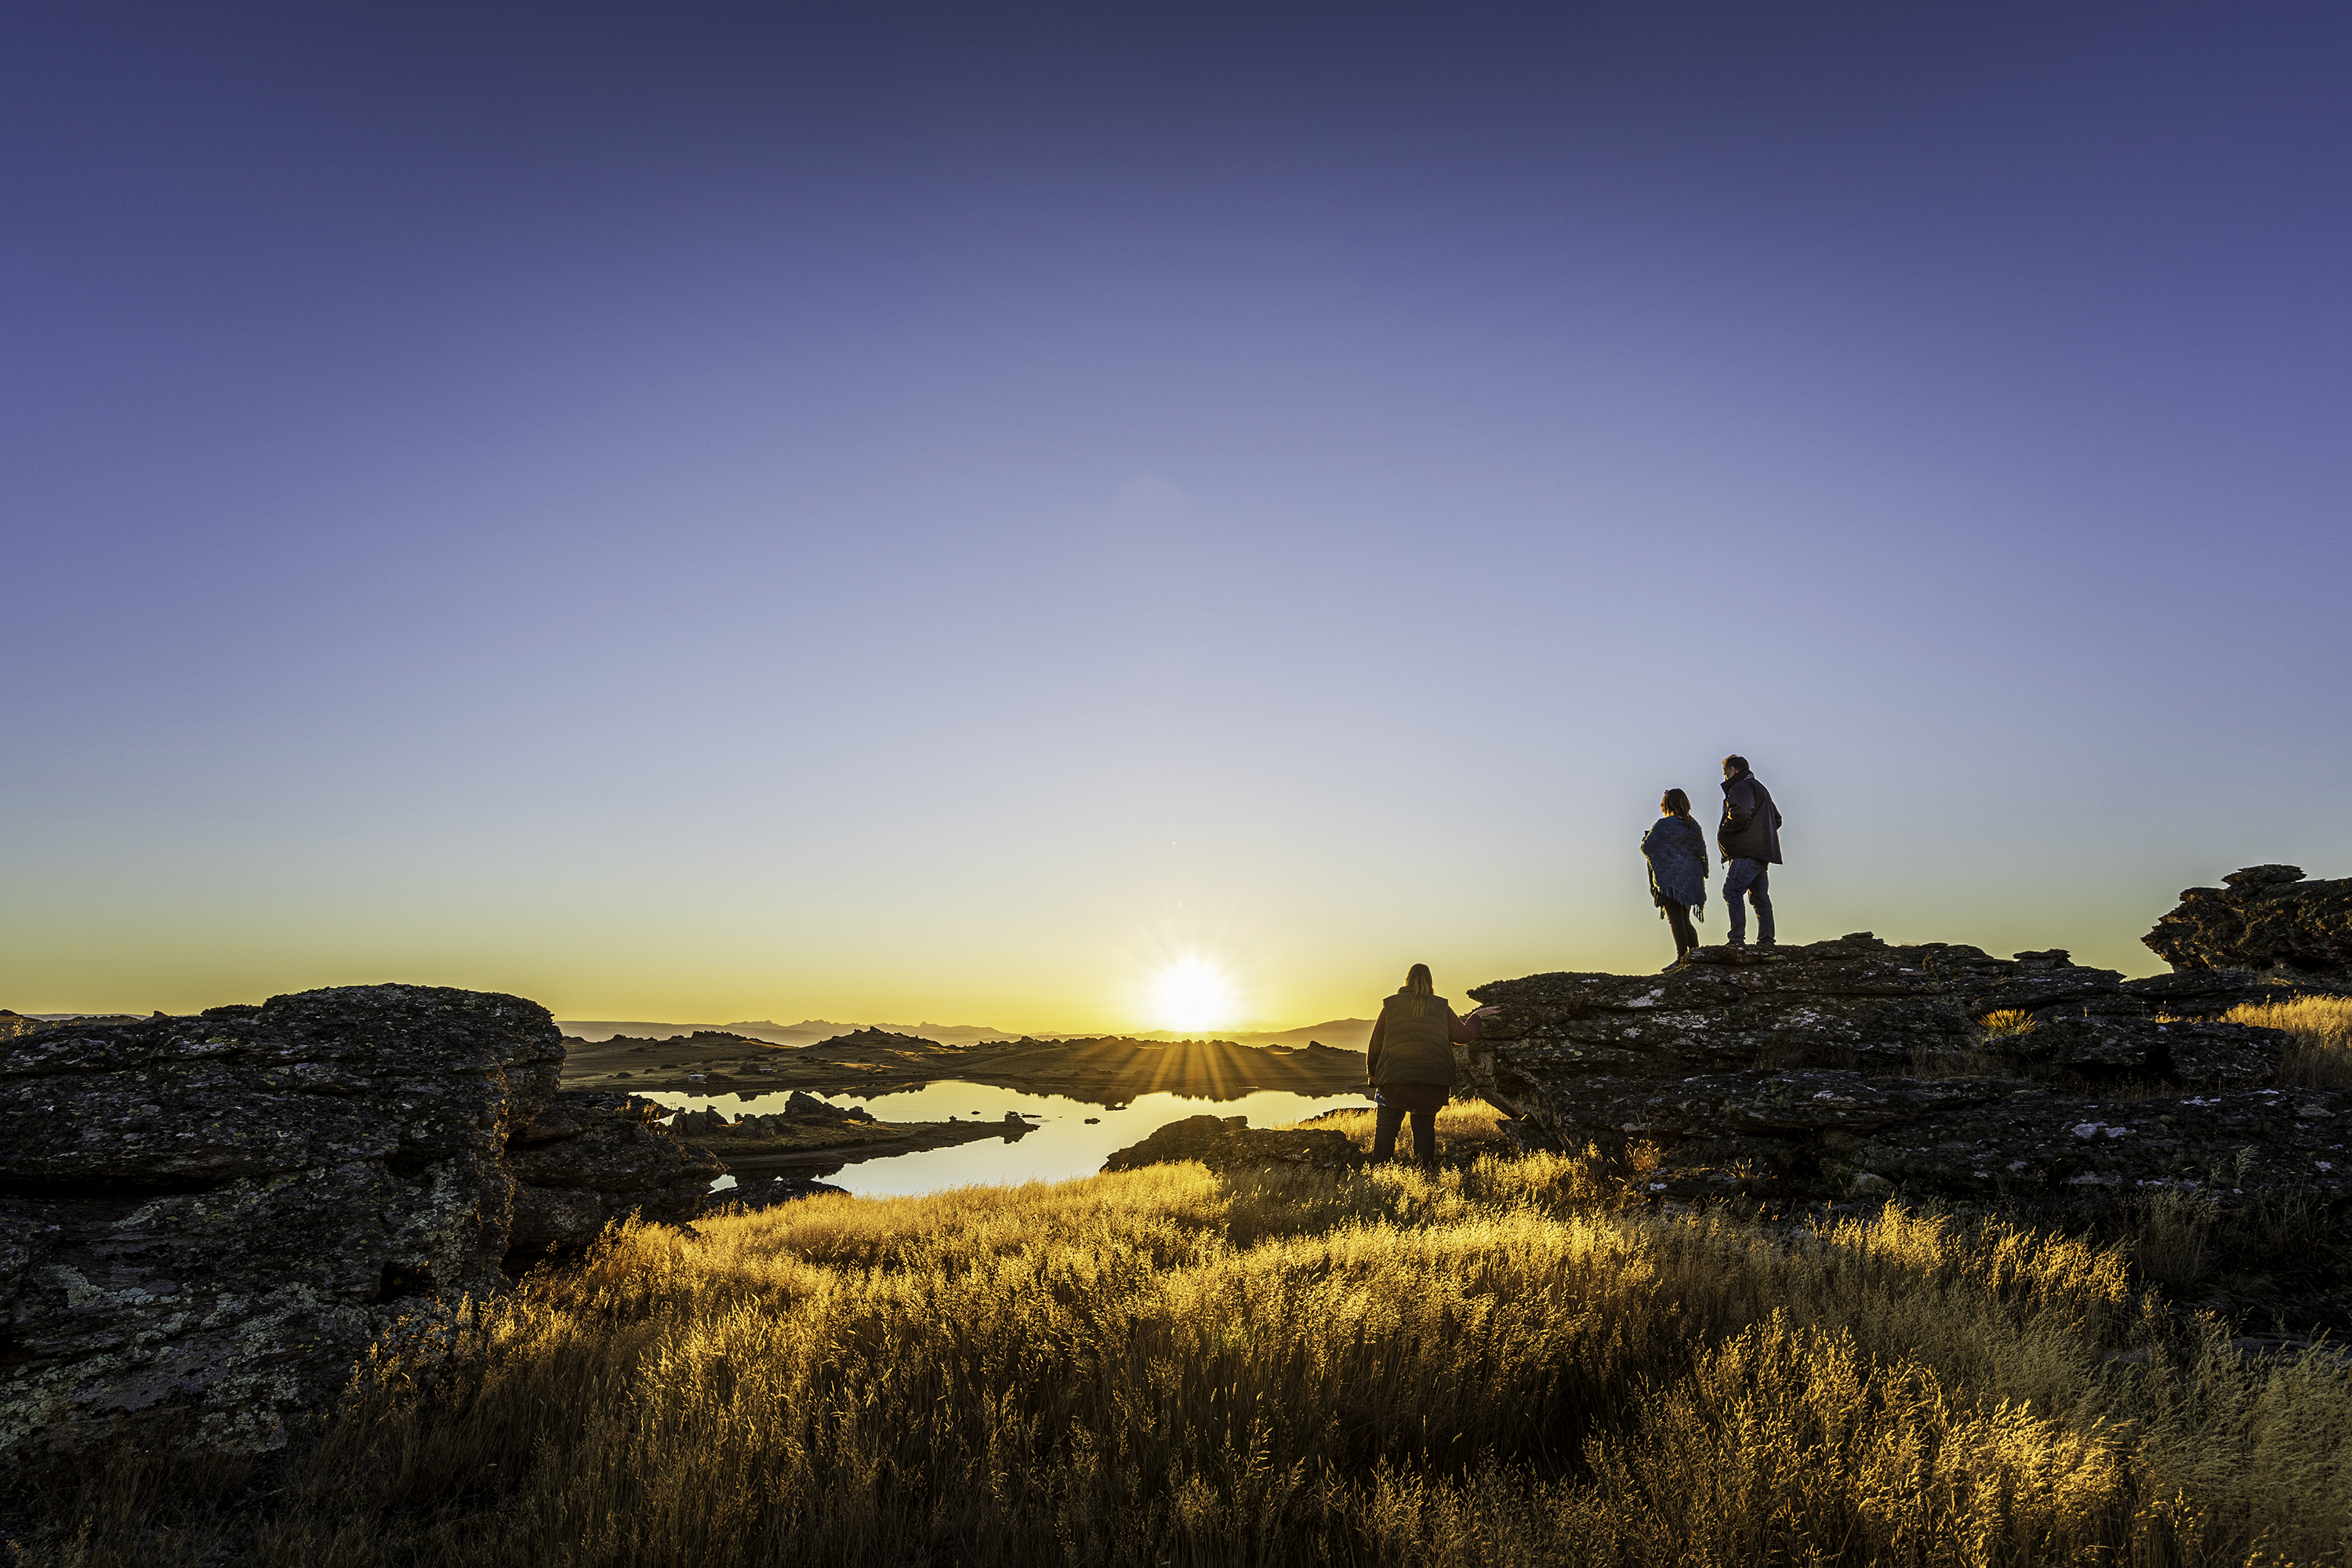 Tourism Central Otago has confirmed its ambitious long-term tourism vision through the Destination Management Plan (DMP). 